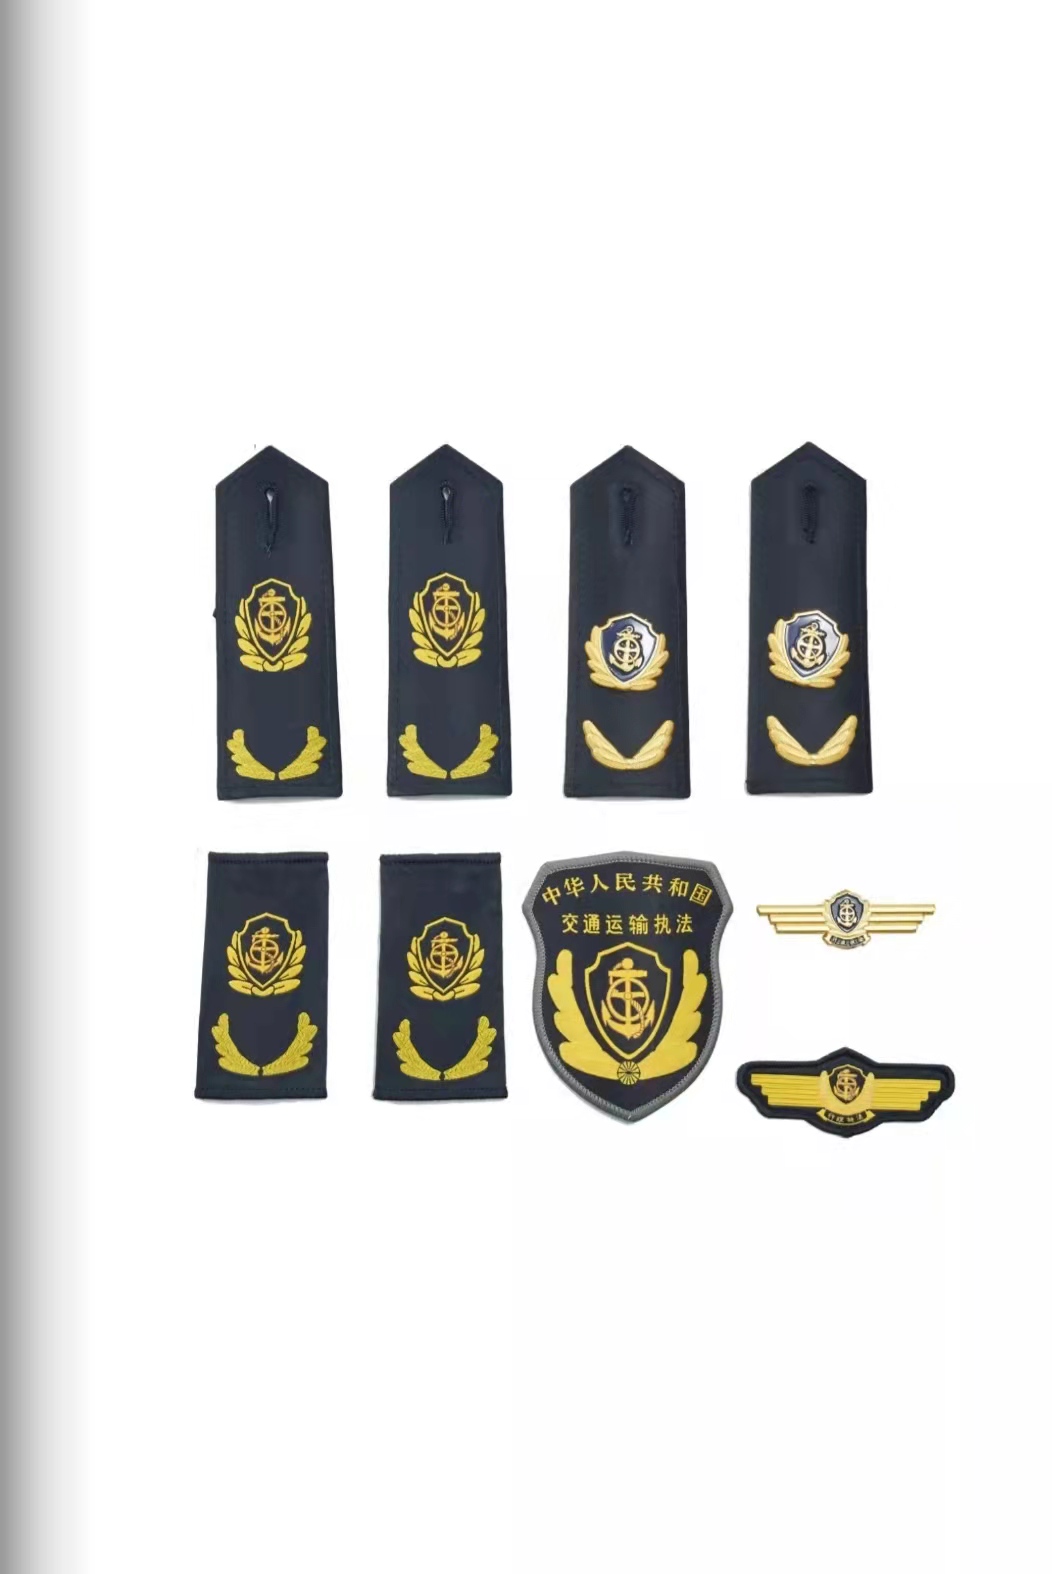 齐齐哈尔六部门统一交通运输执法服装标志